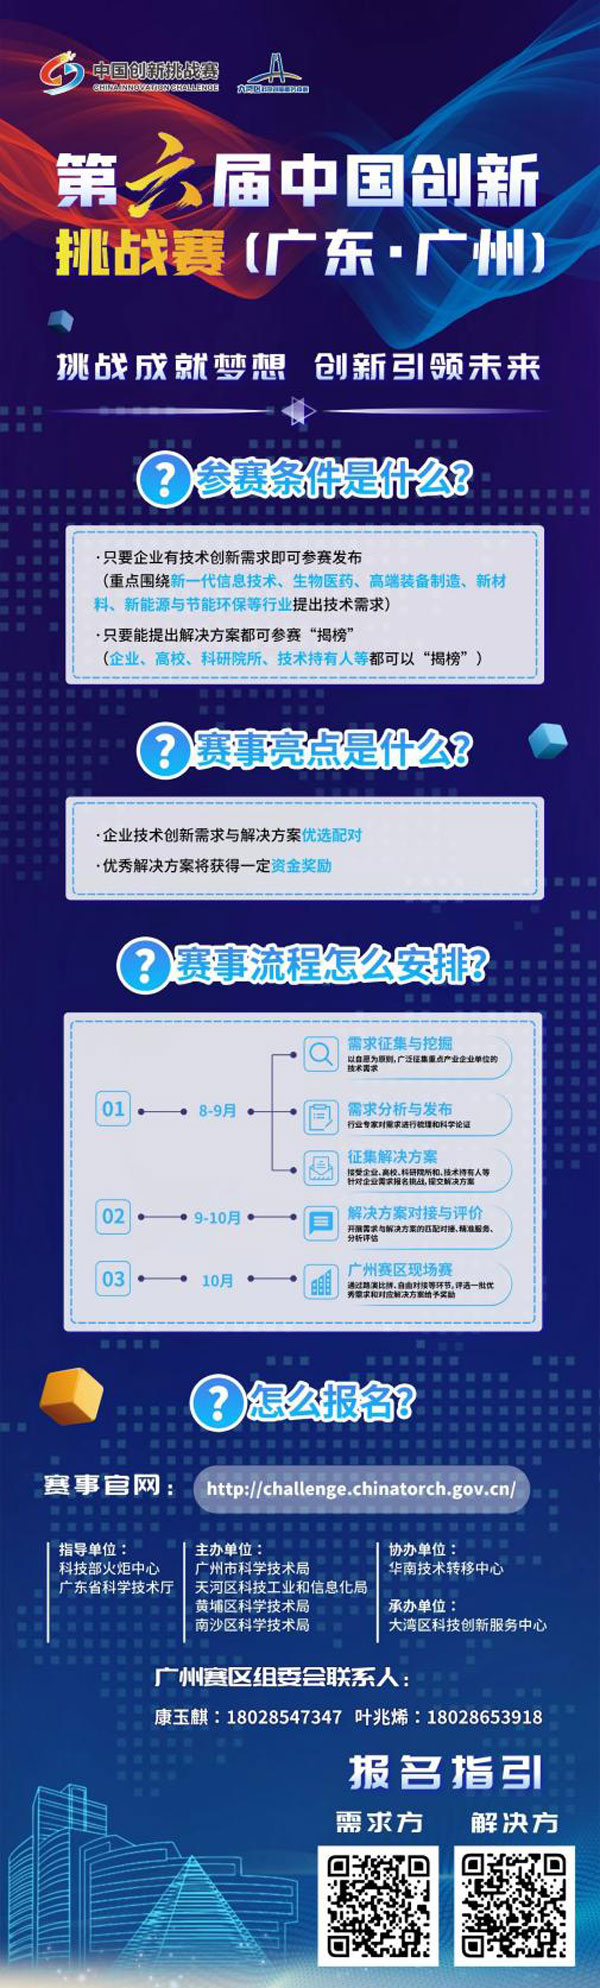 附件2-第六届中国创新挑战赛.jpg